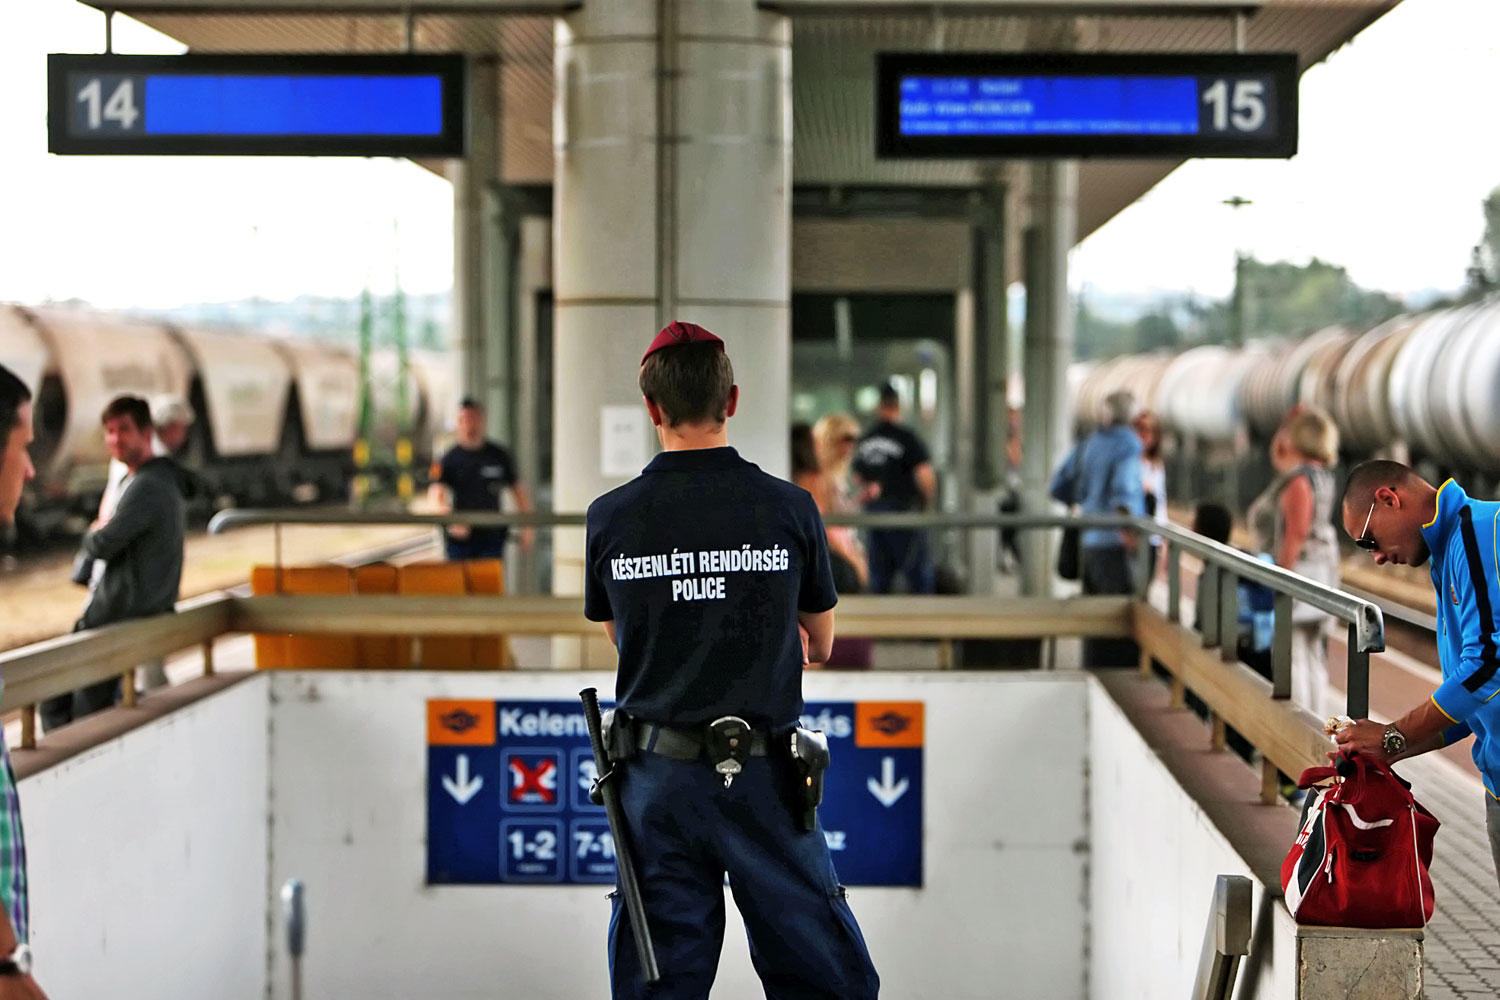 A rendőrök már a peronra sem engedik fel Kelenföldön a menekülteket